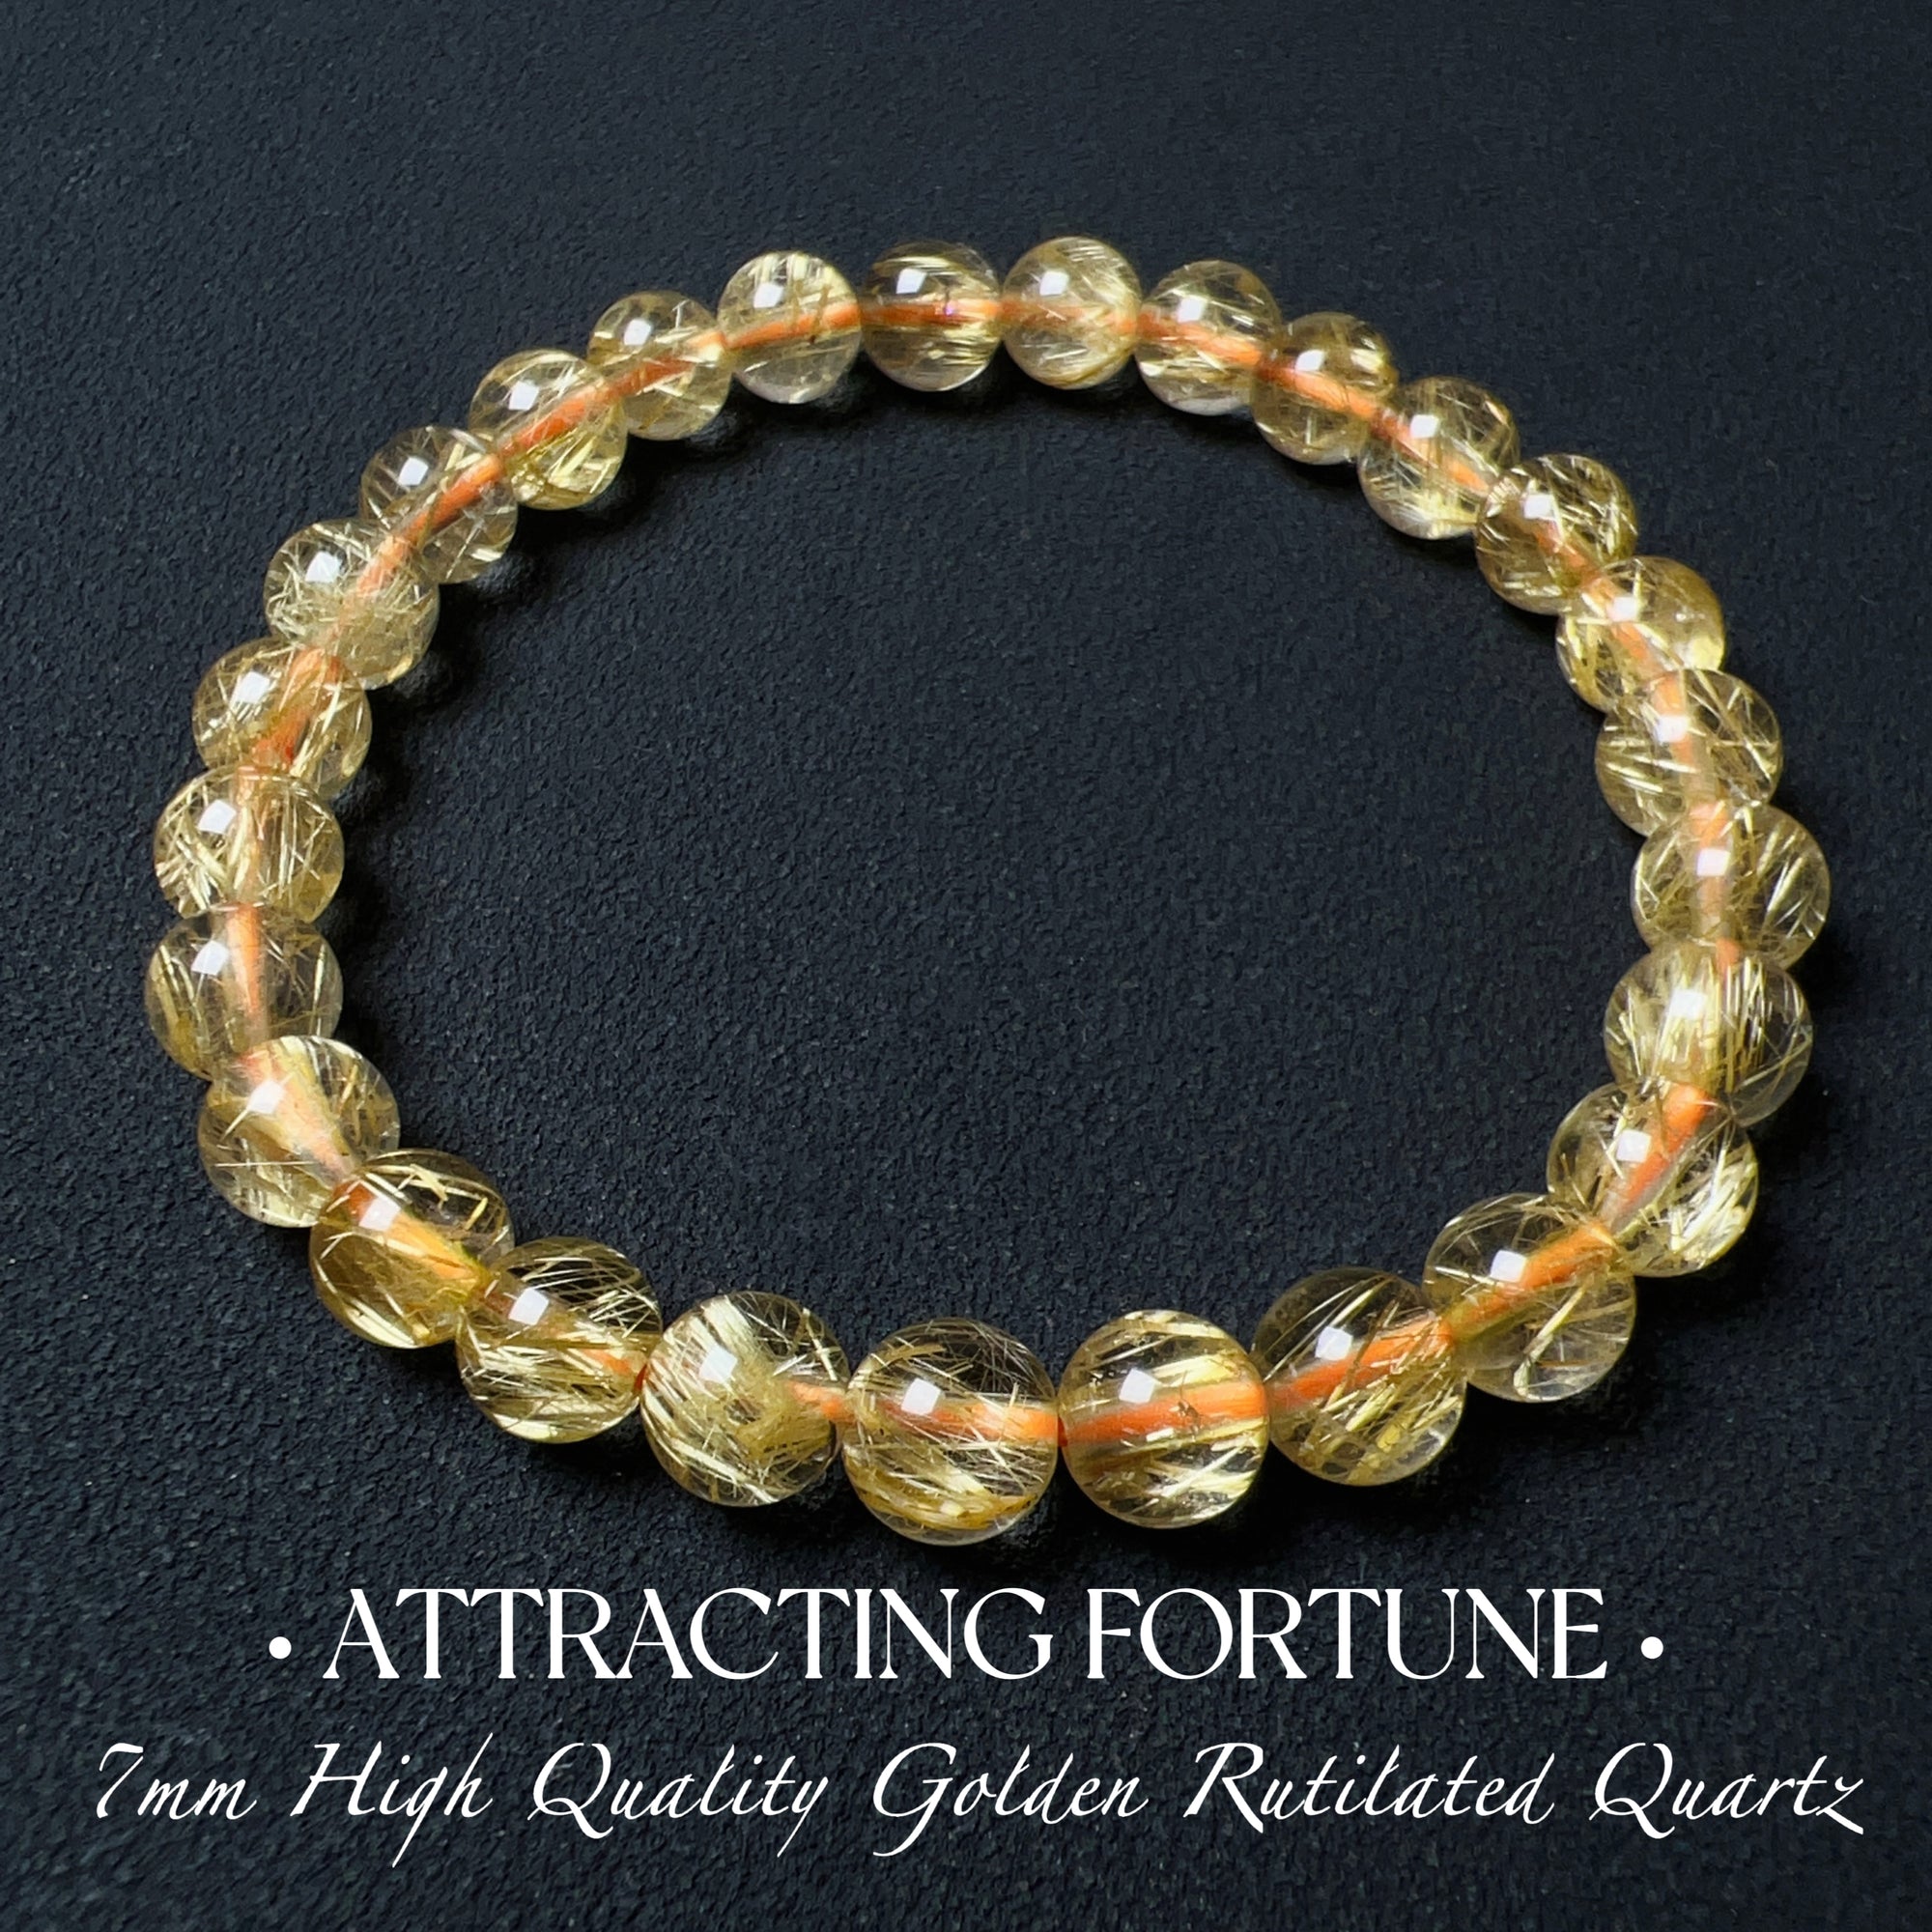 Natural Golden Rutilated Quartz Healing Empowerment Crystal Handmade Bracelet